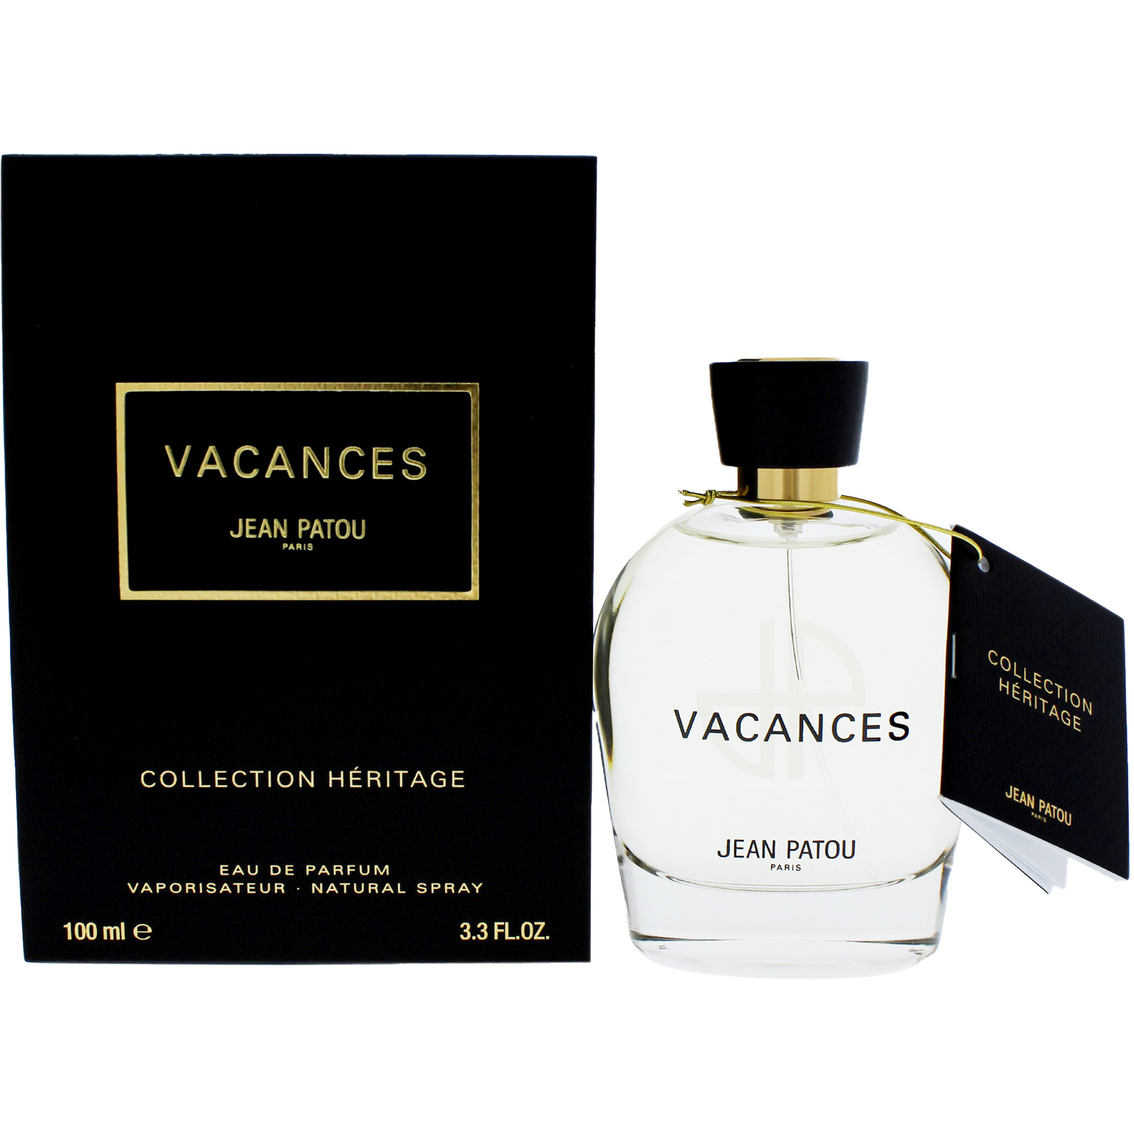 Vacances By Jean Patou For Women Eau De Parfum 3.3 Oz. Spray | Gifts ...